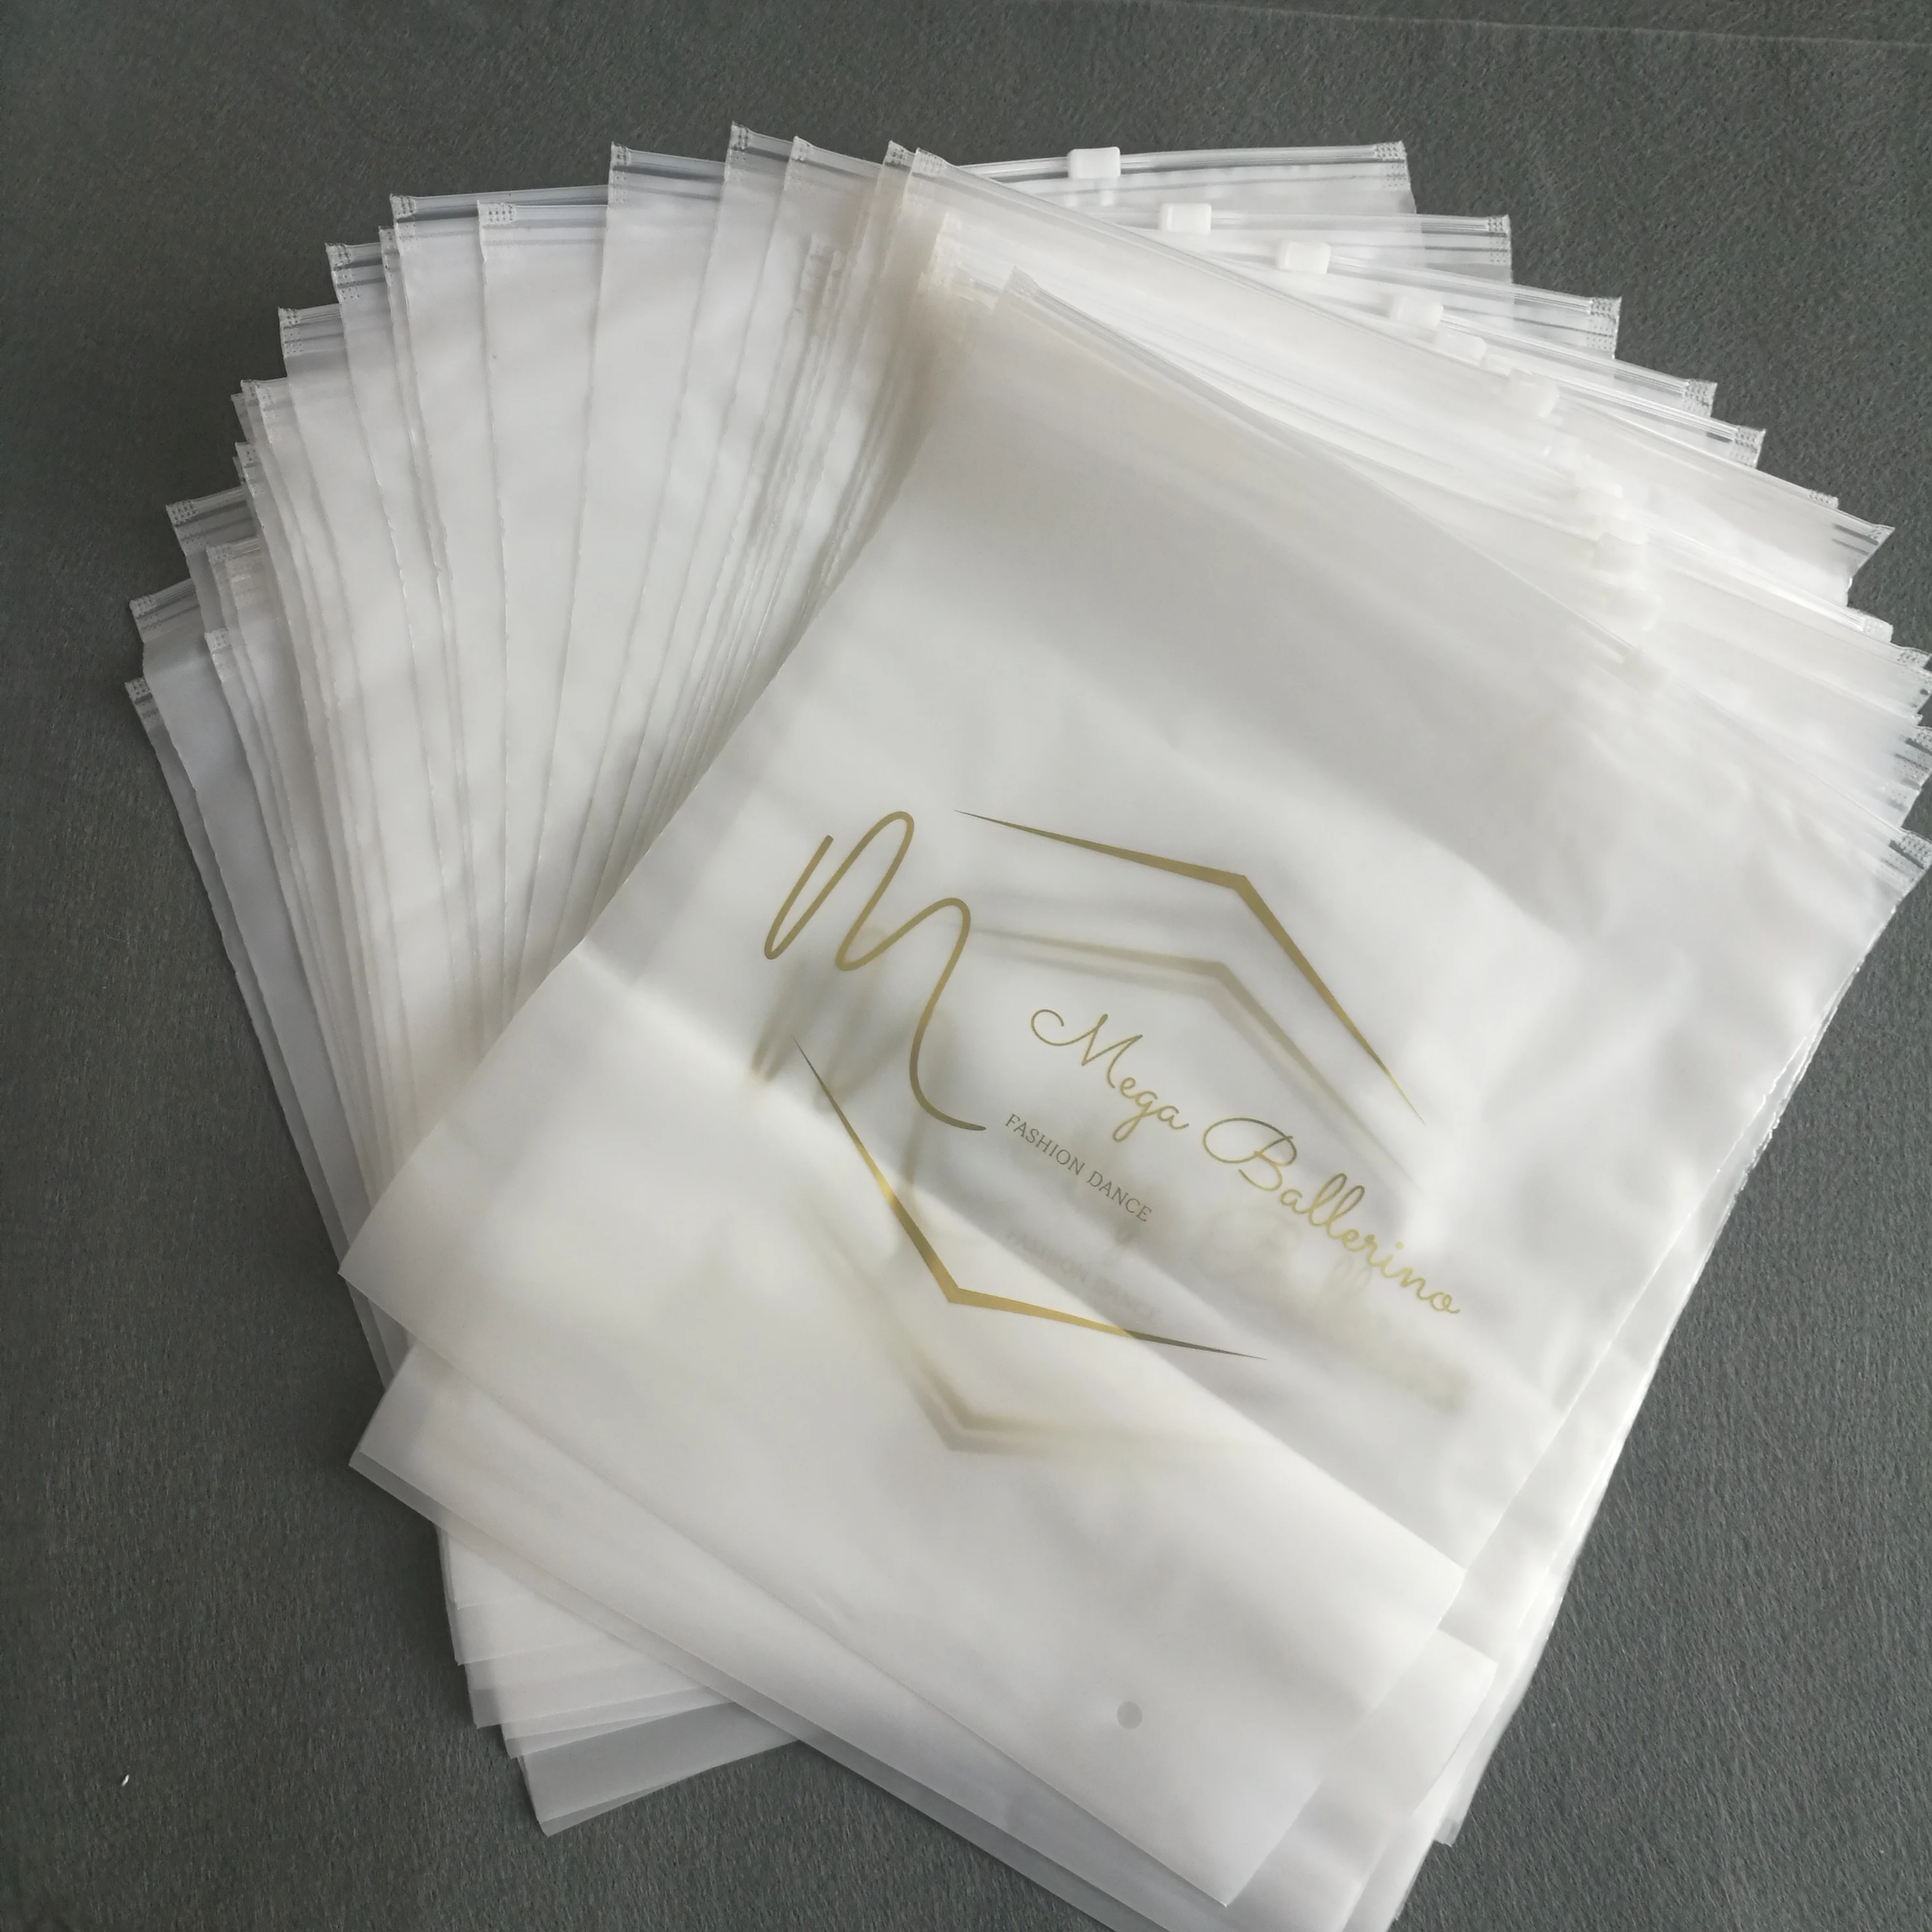 printed plastic packaging